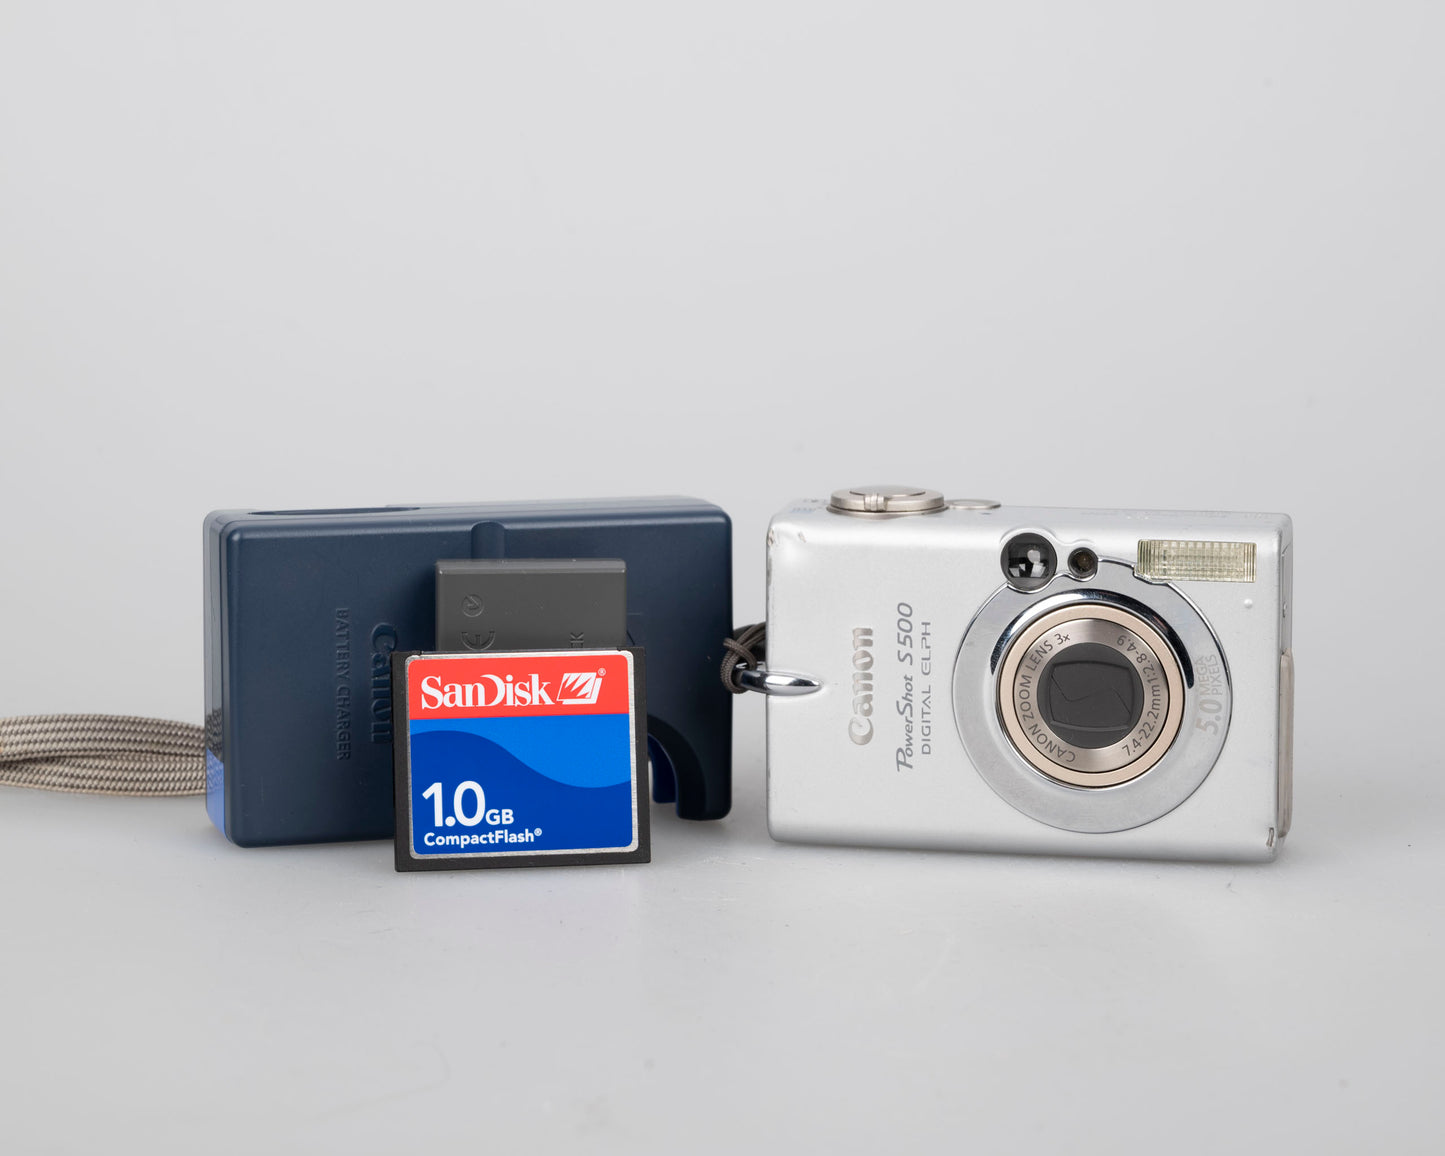 Appareil photo numérique Canon Powershot S500 Digital Elph 5MP CCD avec carte CF 1 Go + batterie + chargeur